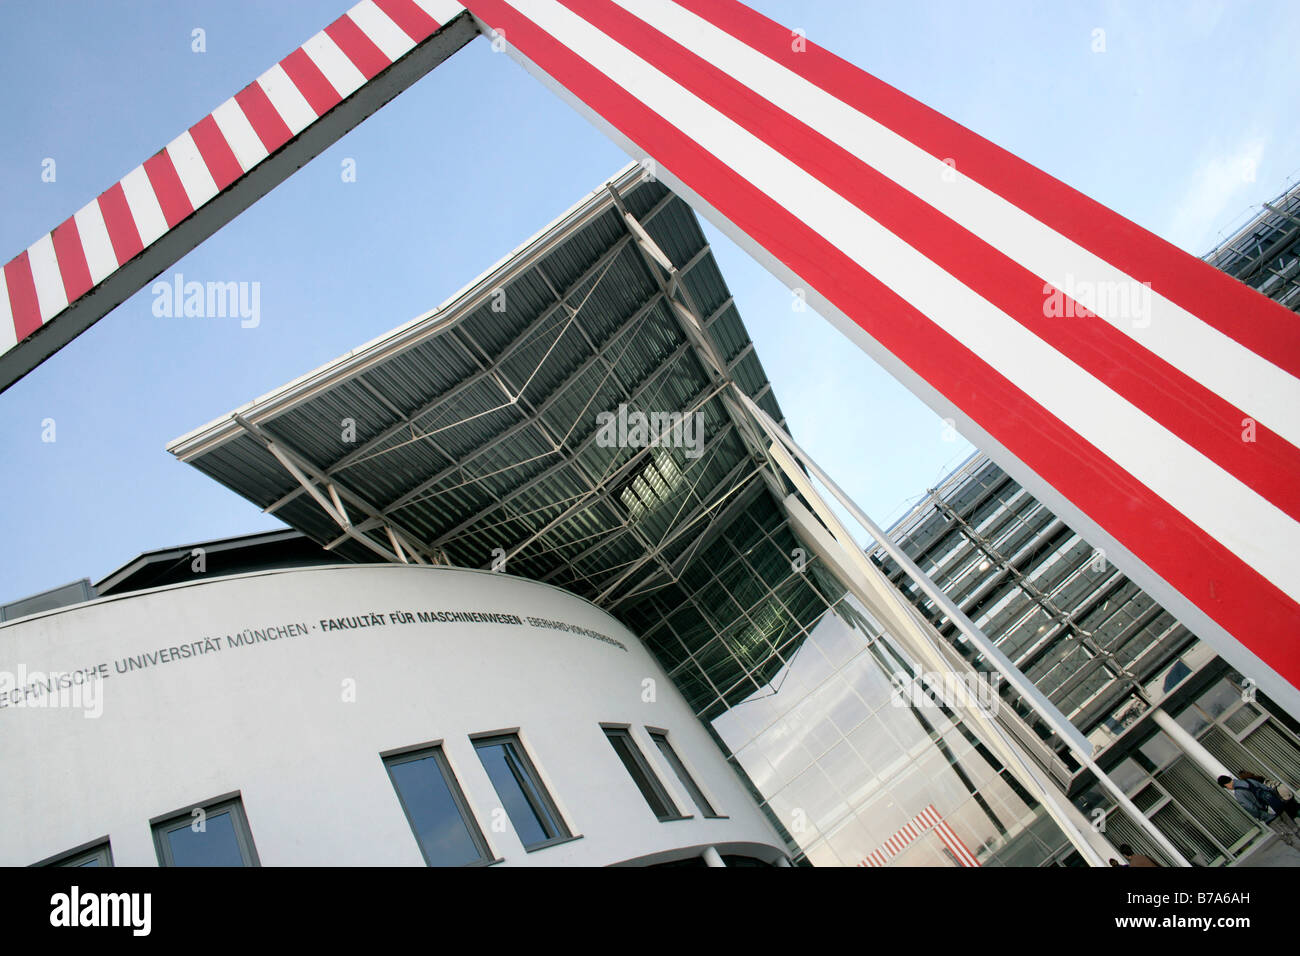 Fakultät für Maschinenbau, Bau, technische Universität München, Garching, Bayern, Deutschland, Europa Stockfoto